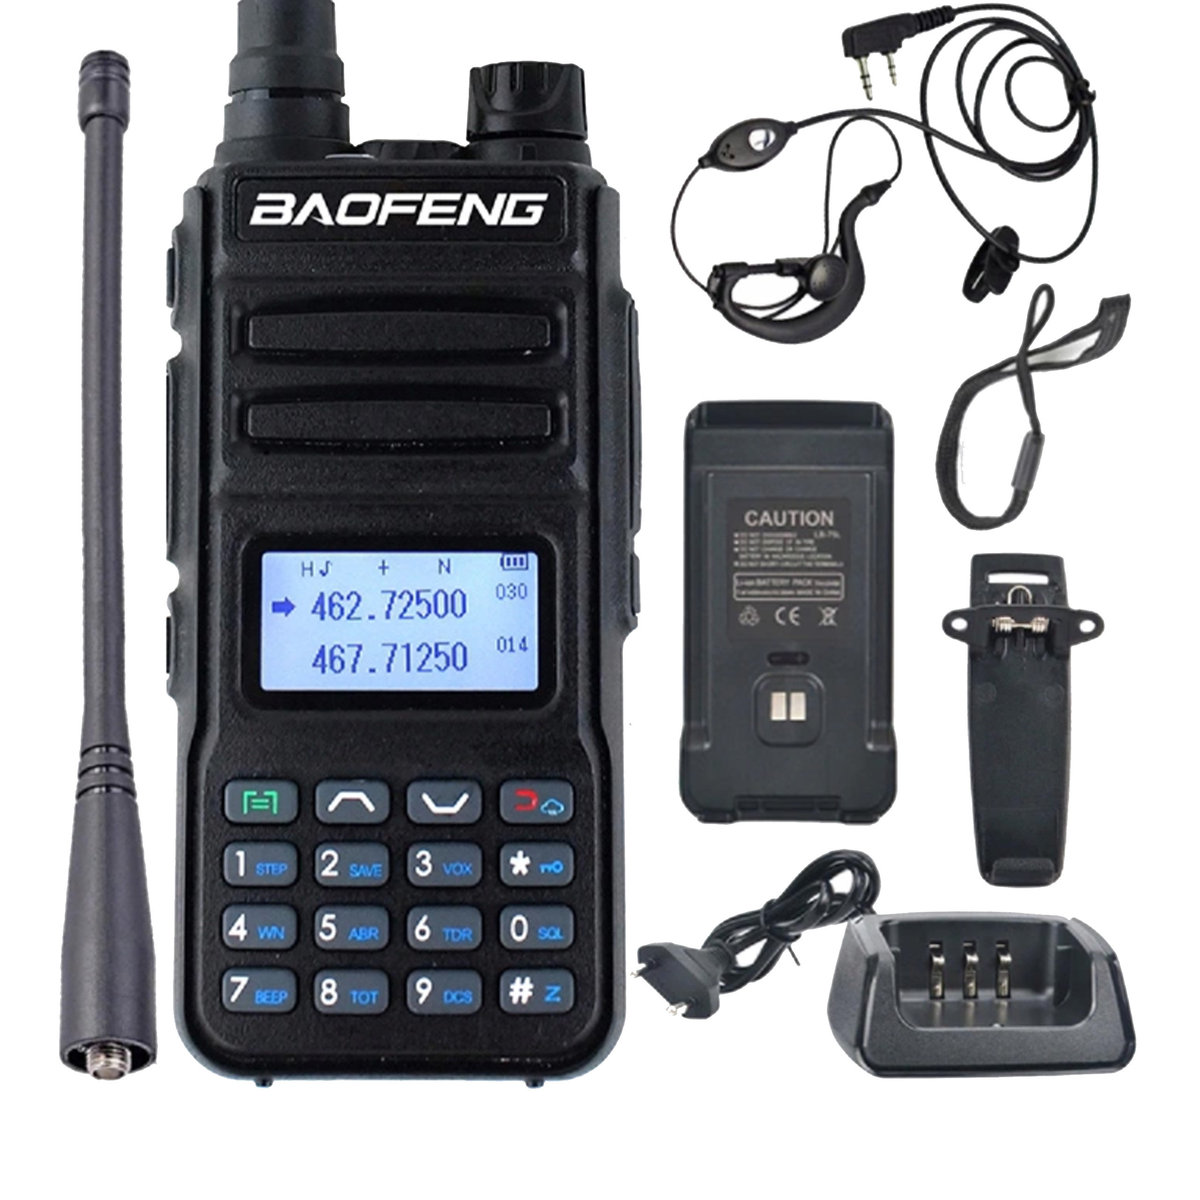 Baofeng P15UV - dwupasmowy radiotelefon 2m + 70cm z ładowaniem MicroUSB typu C